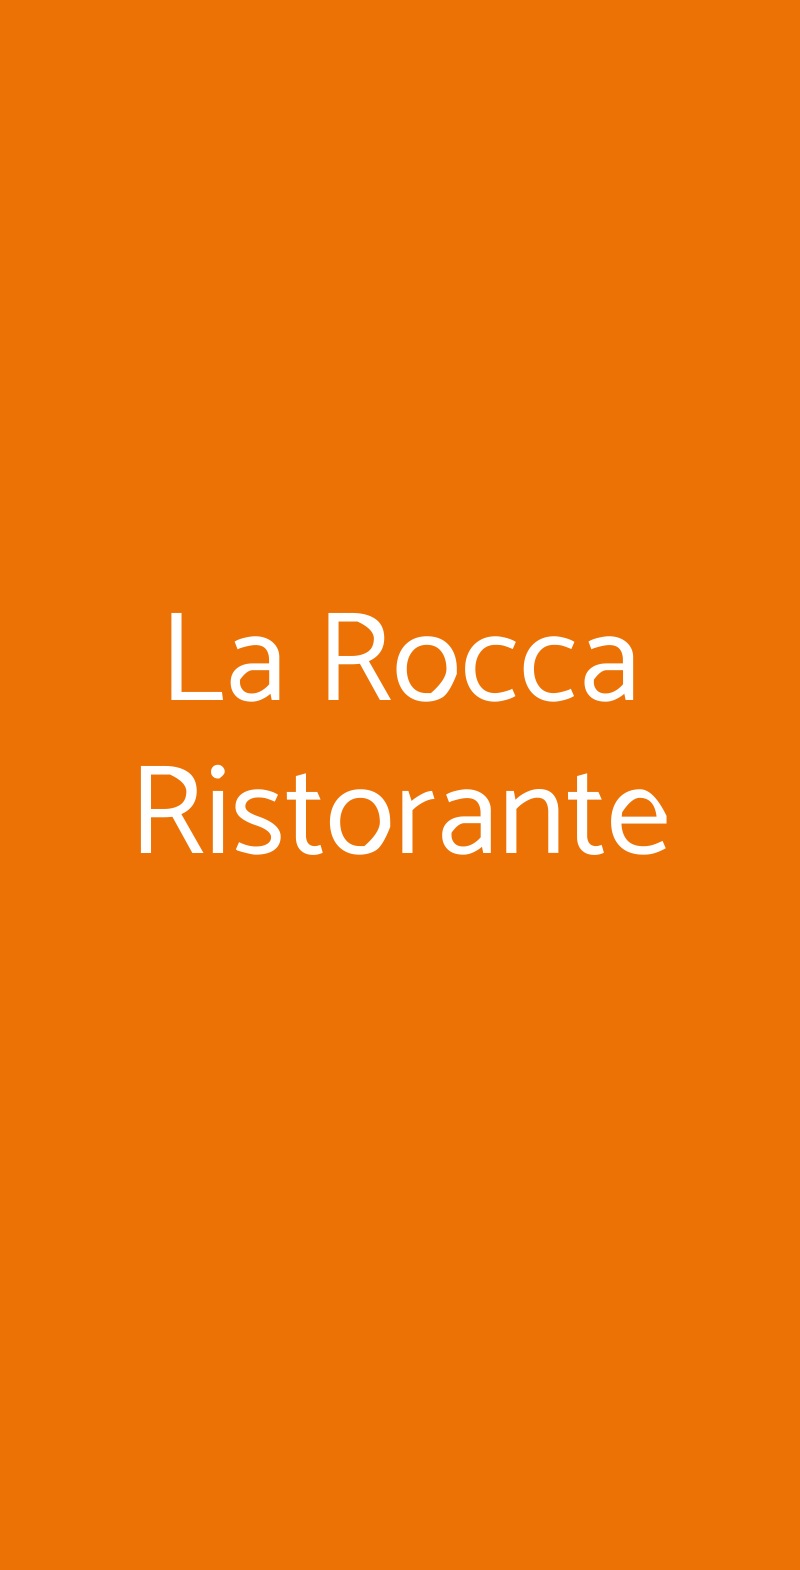 La Rocca Ristorante Vogogna menù 1 pagina